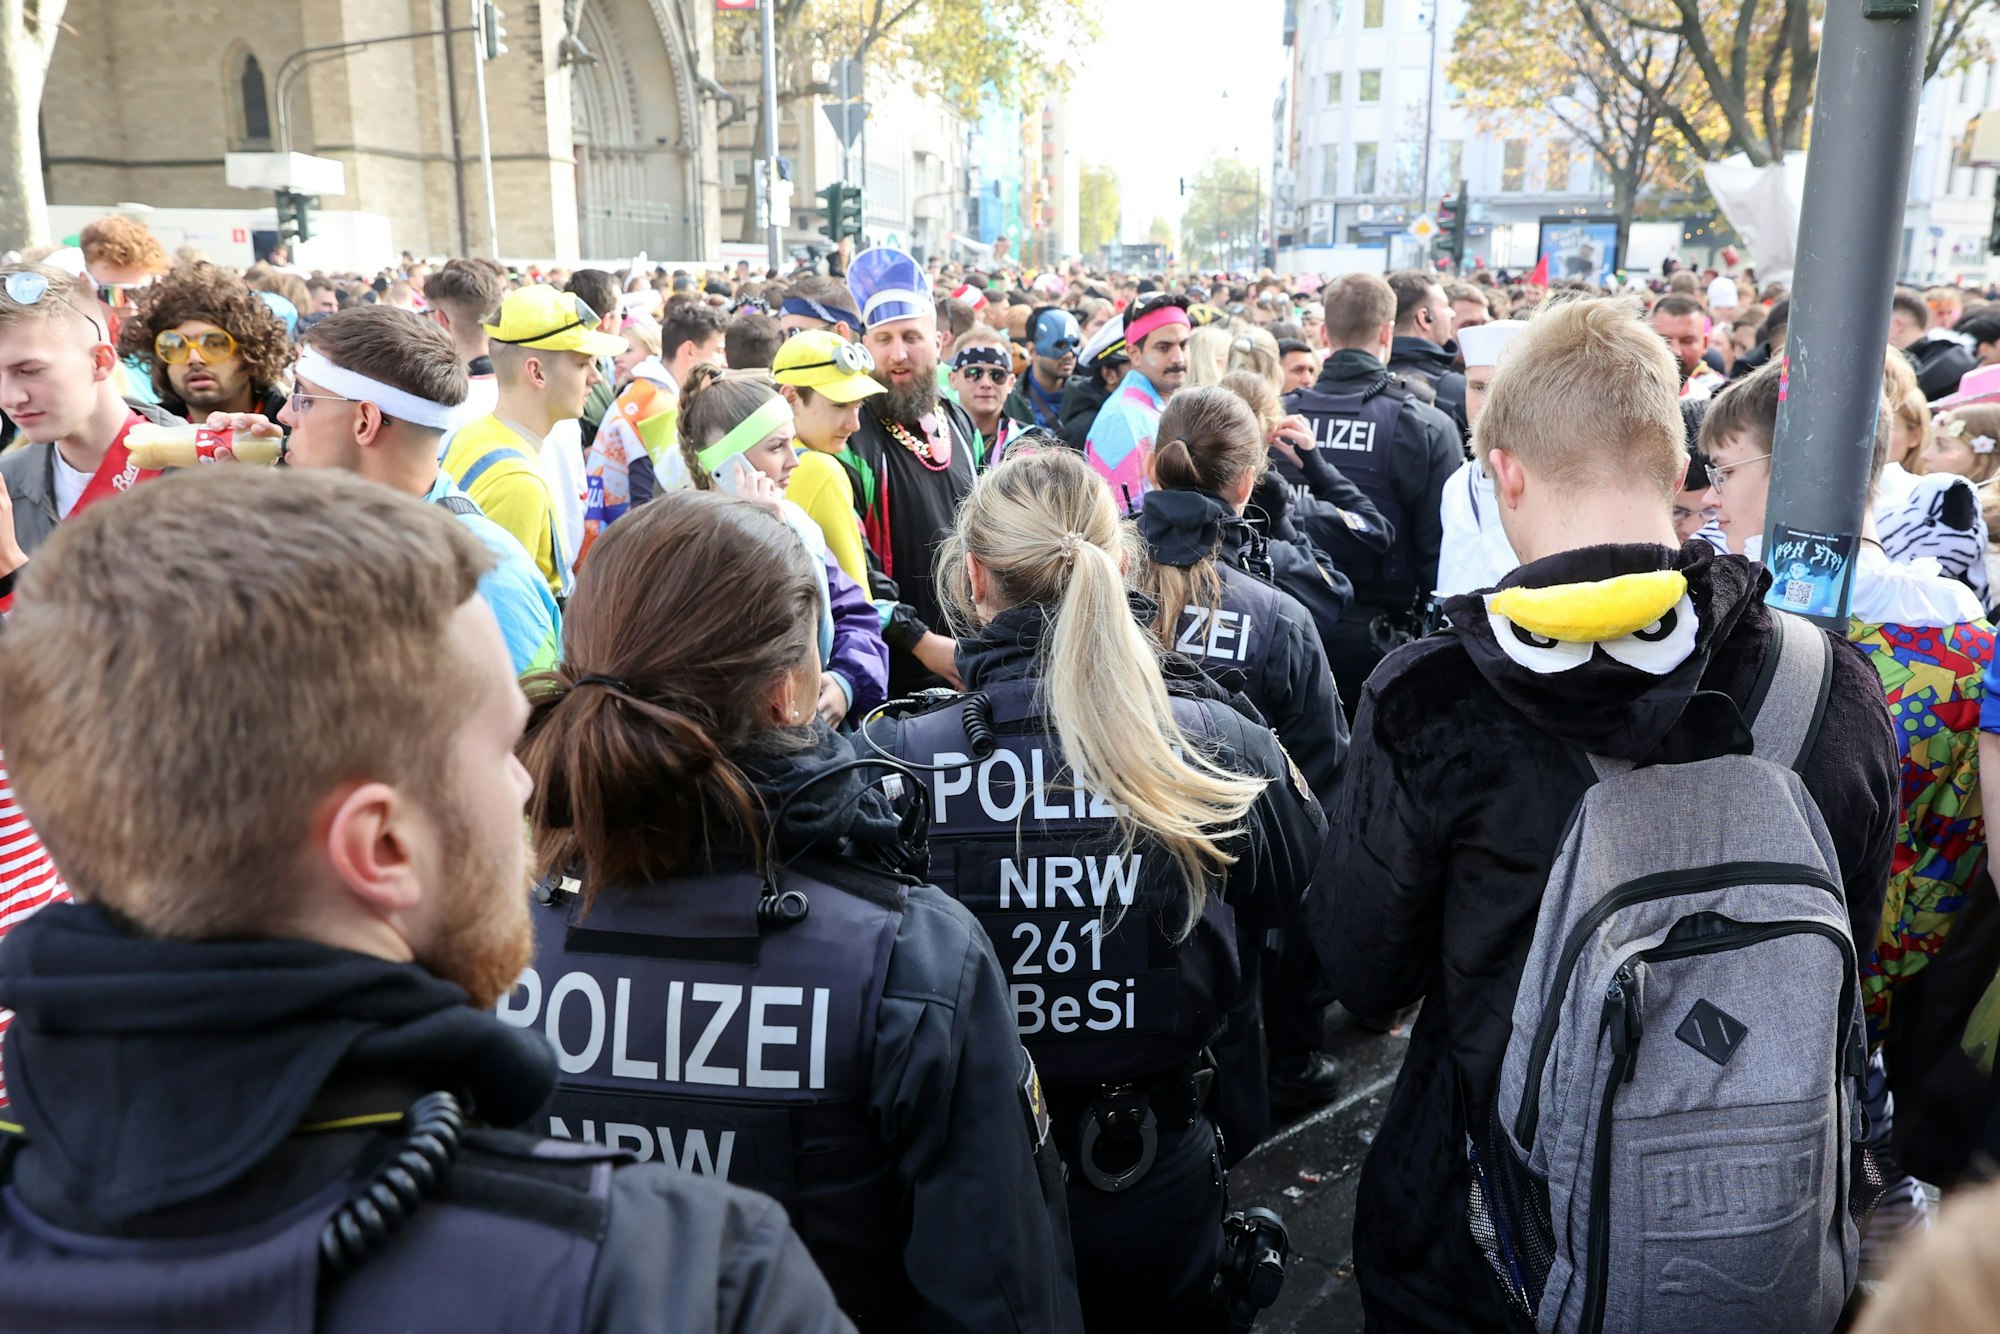 Zum Sessionsauftakt am 11.11. in Köln zeigte die Polizei starke Präsenz auf der überfüllten Zülpicher Straße.